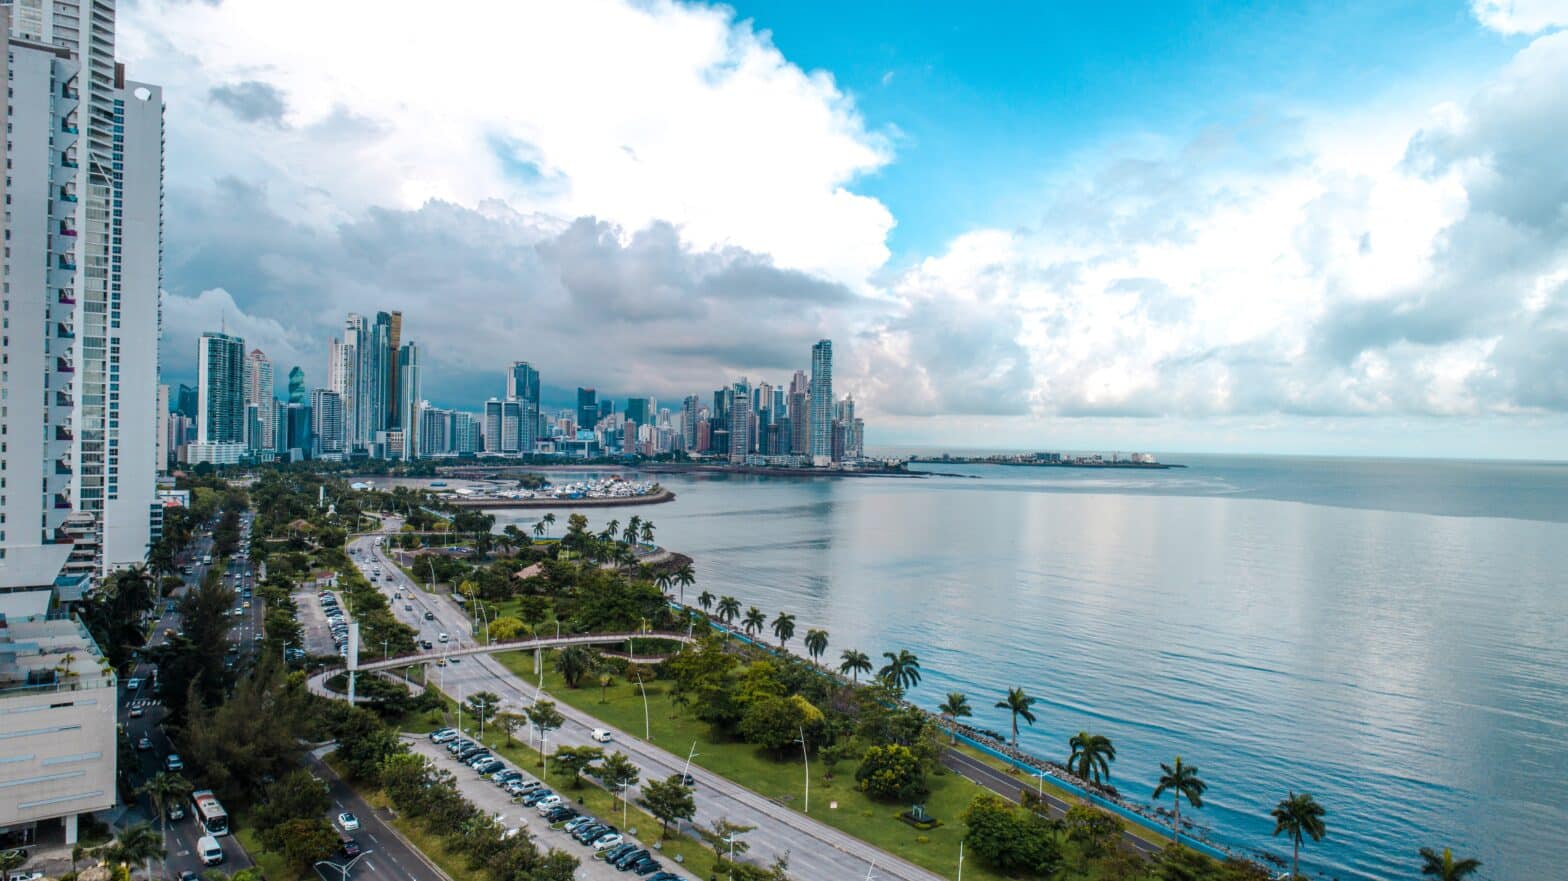 Leben als Expat in Panama: unsere wichtigsten Tipps für einen erfolgreichen Umzug